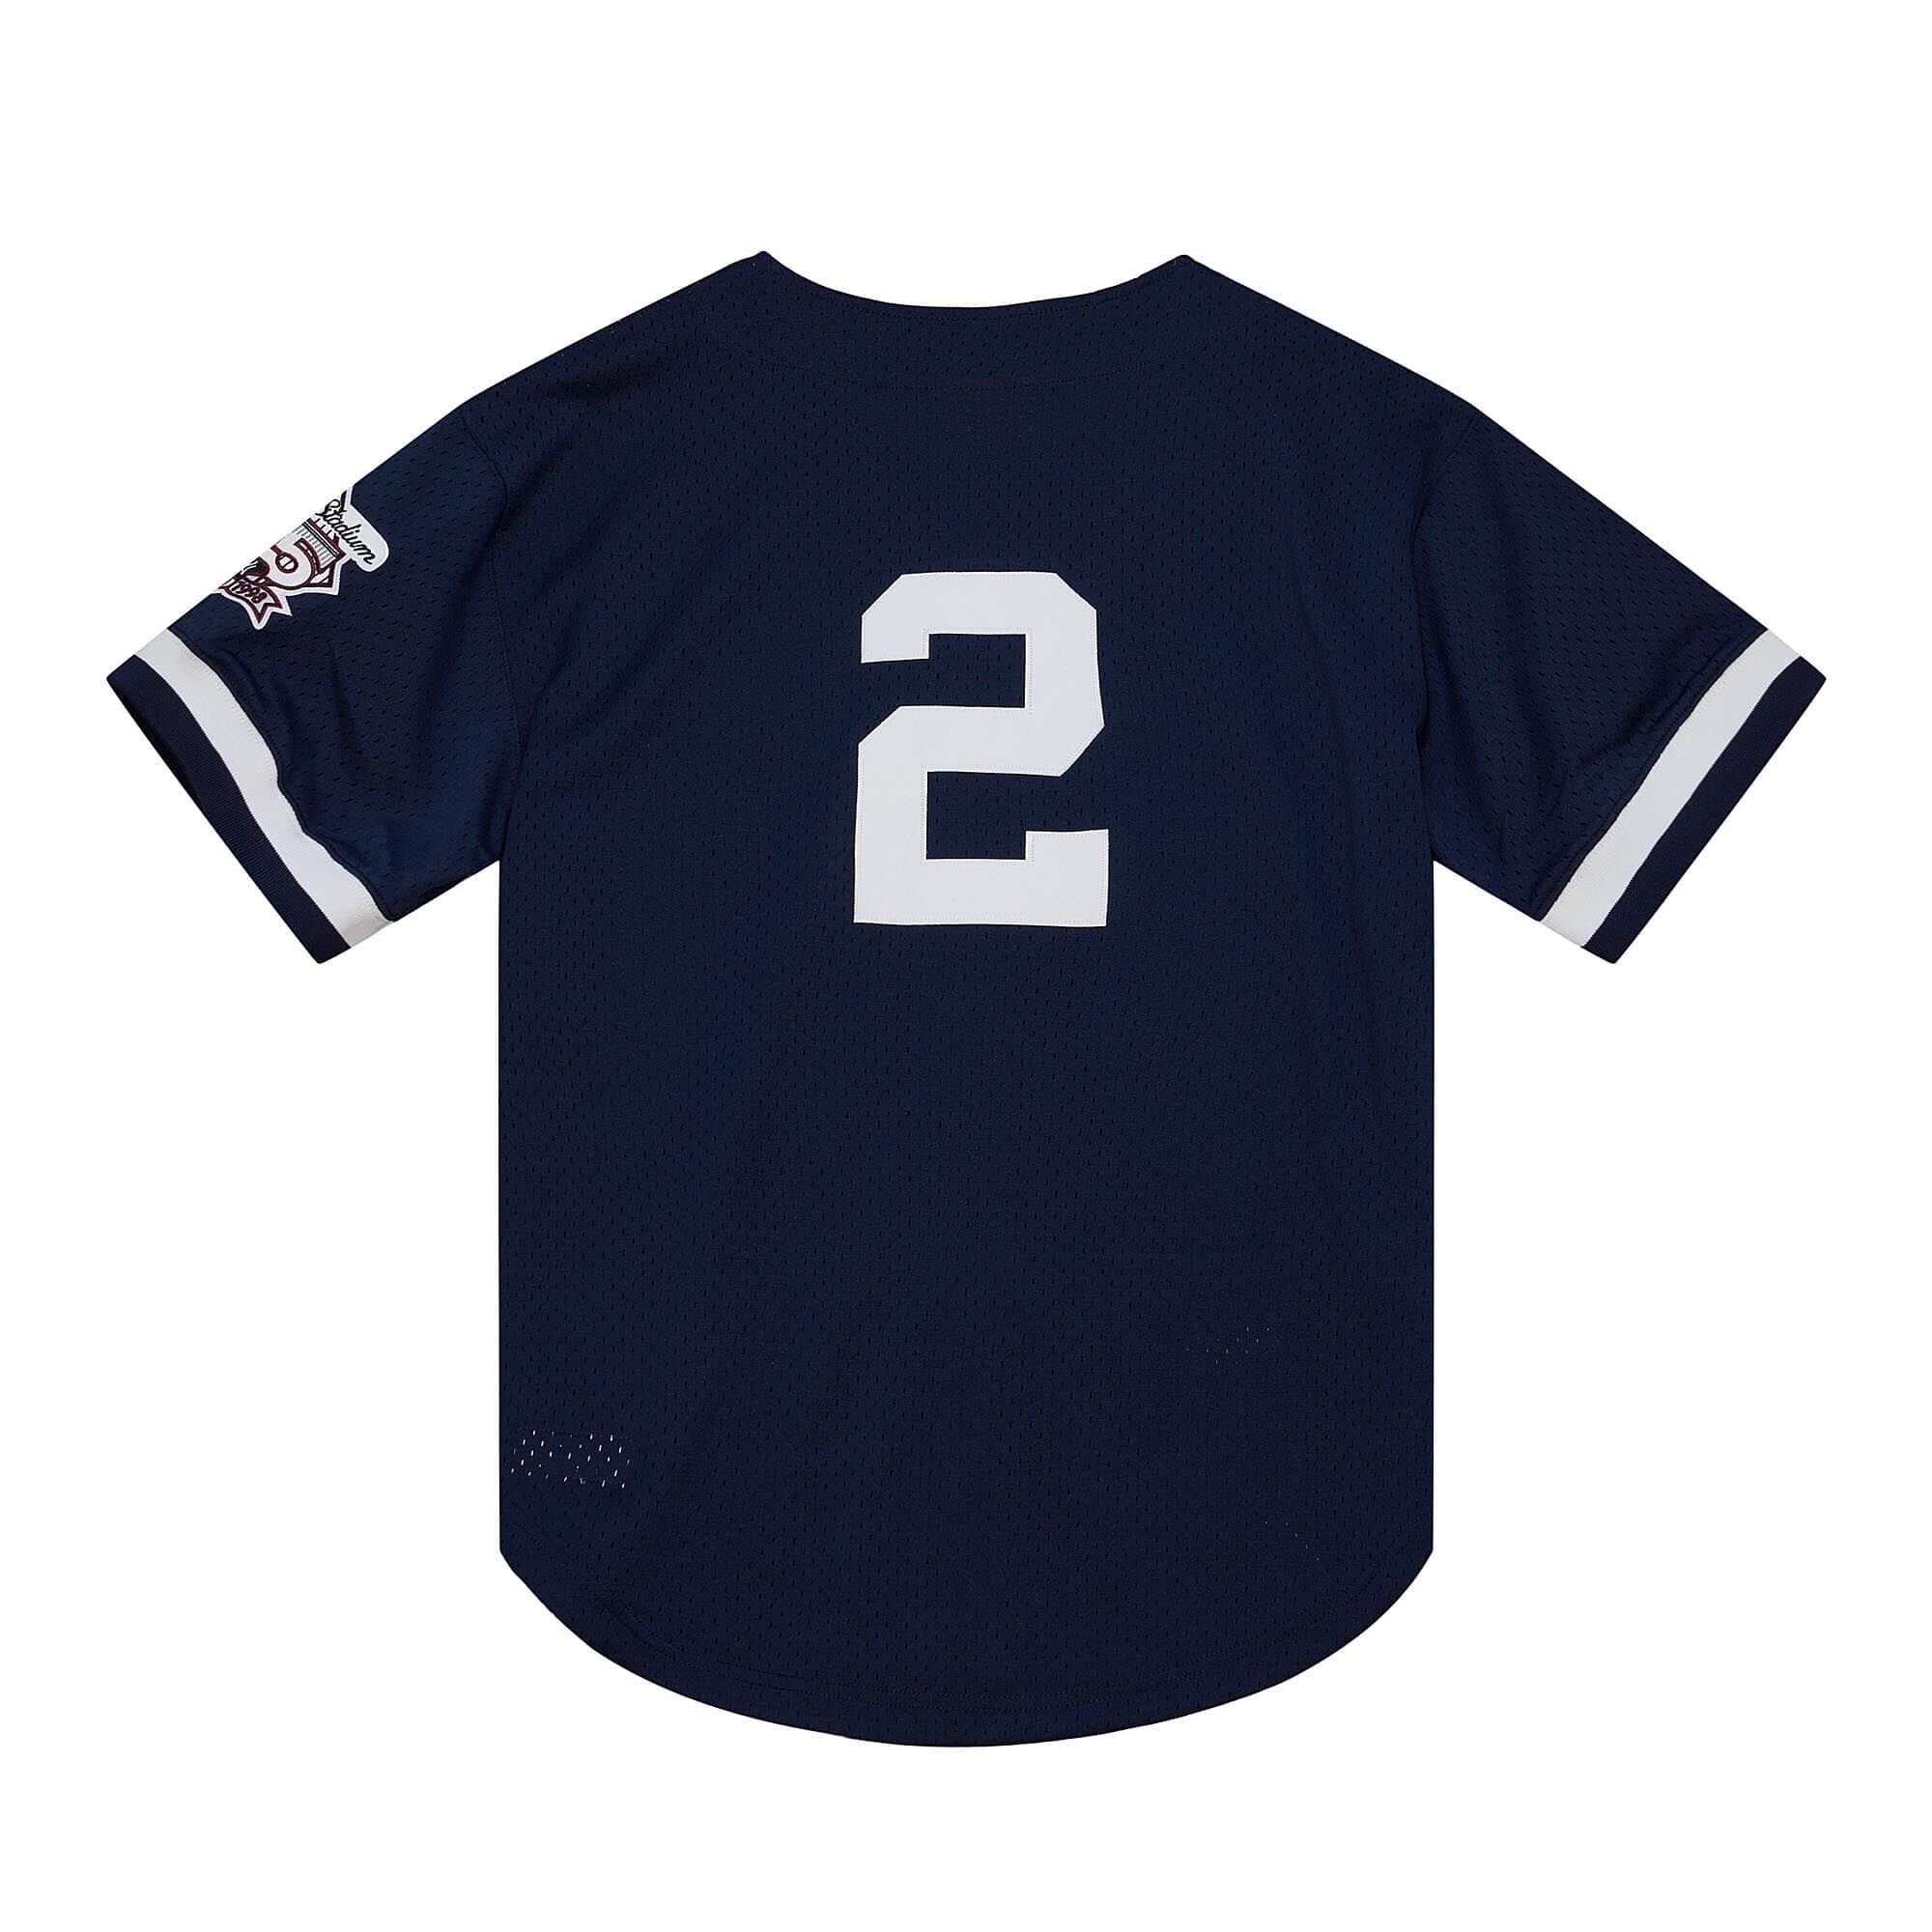 1998 Yankees Shirt 